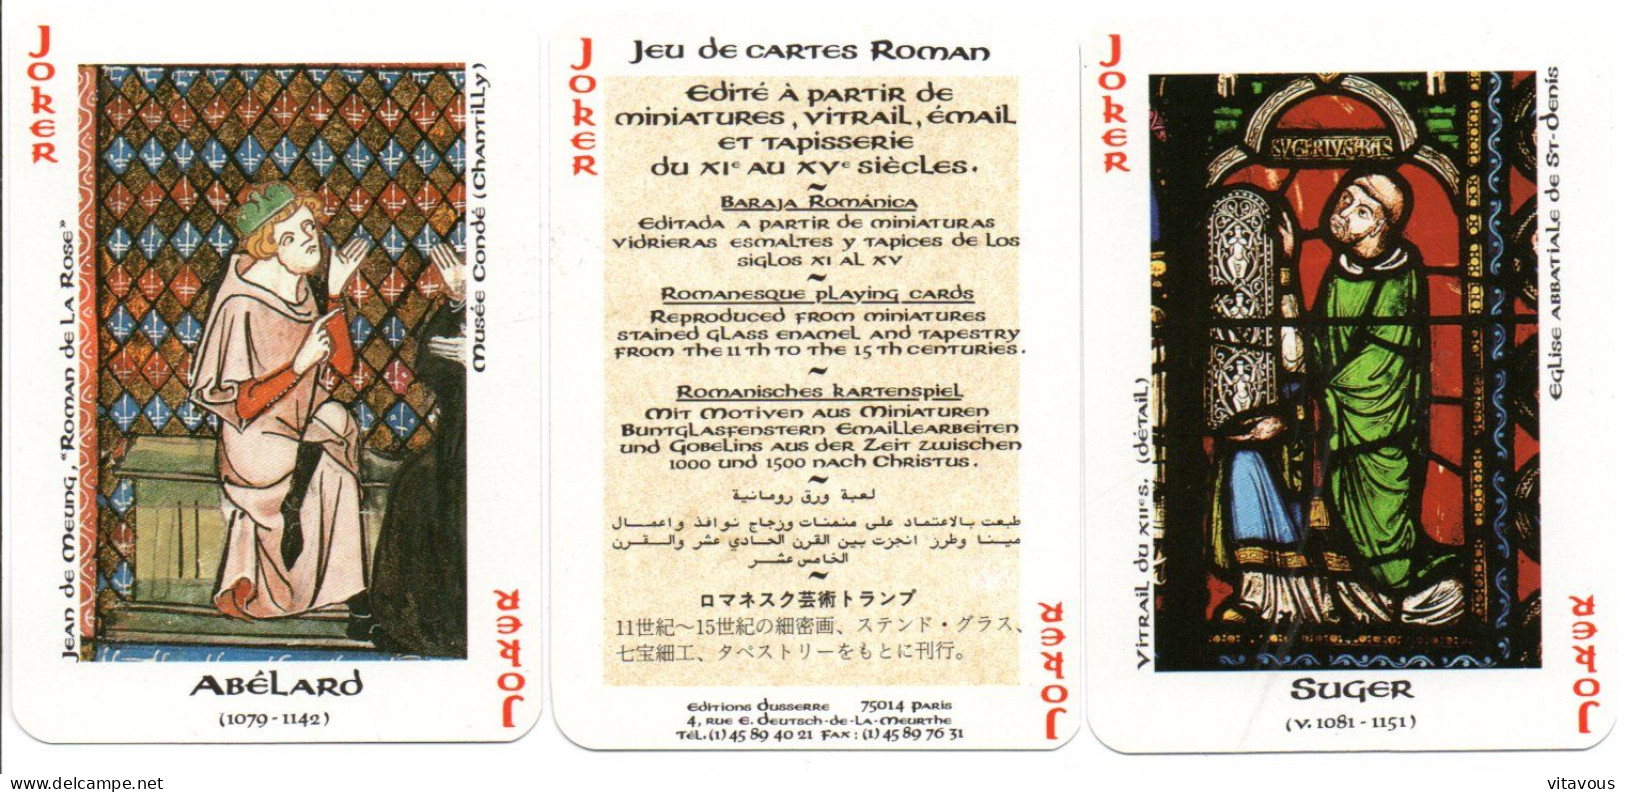 Jeu De 54 Cartes ROMAND Playing Cards - 54 Cards